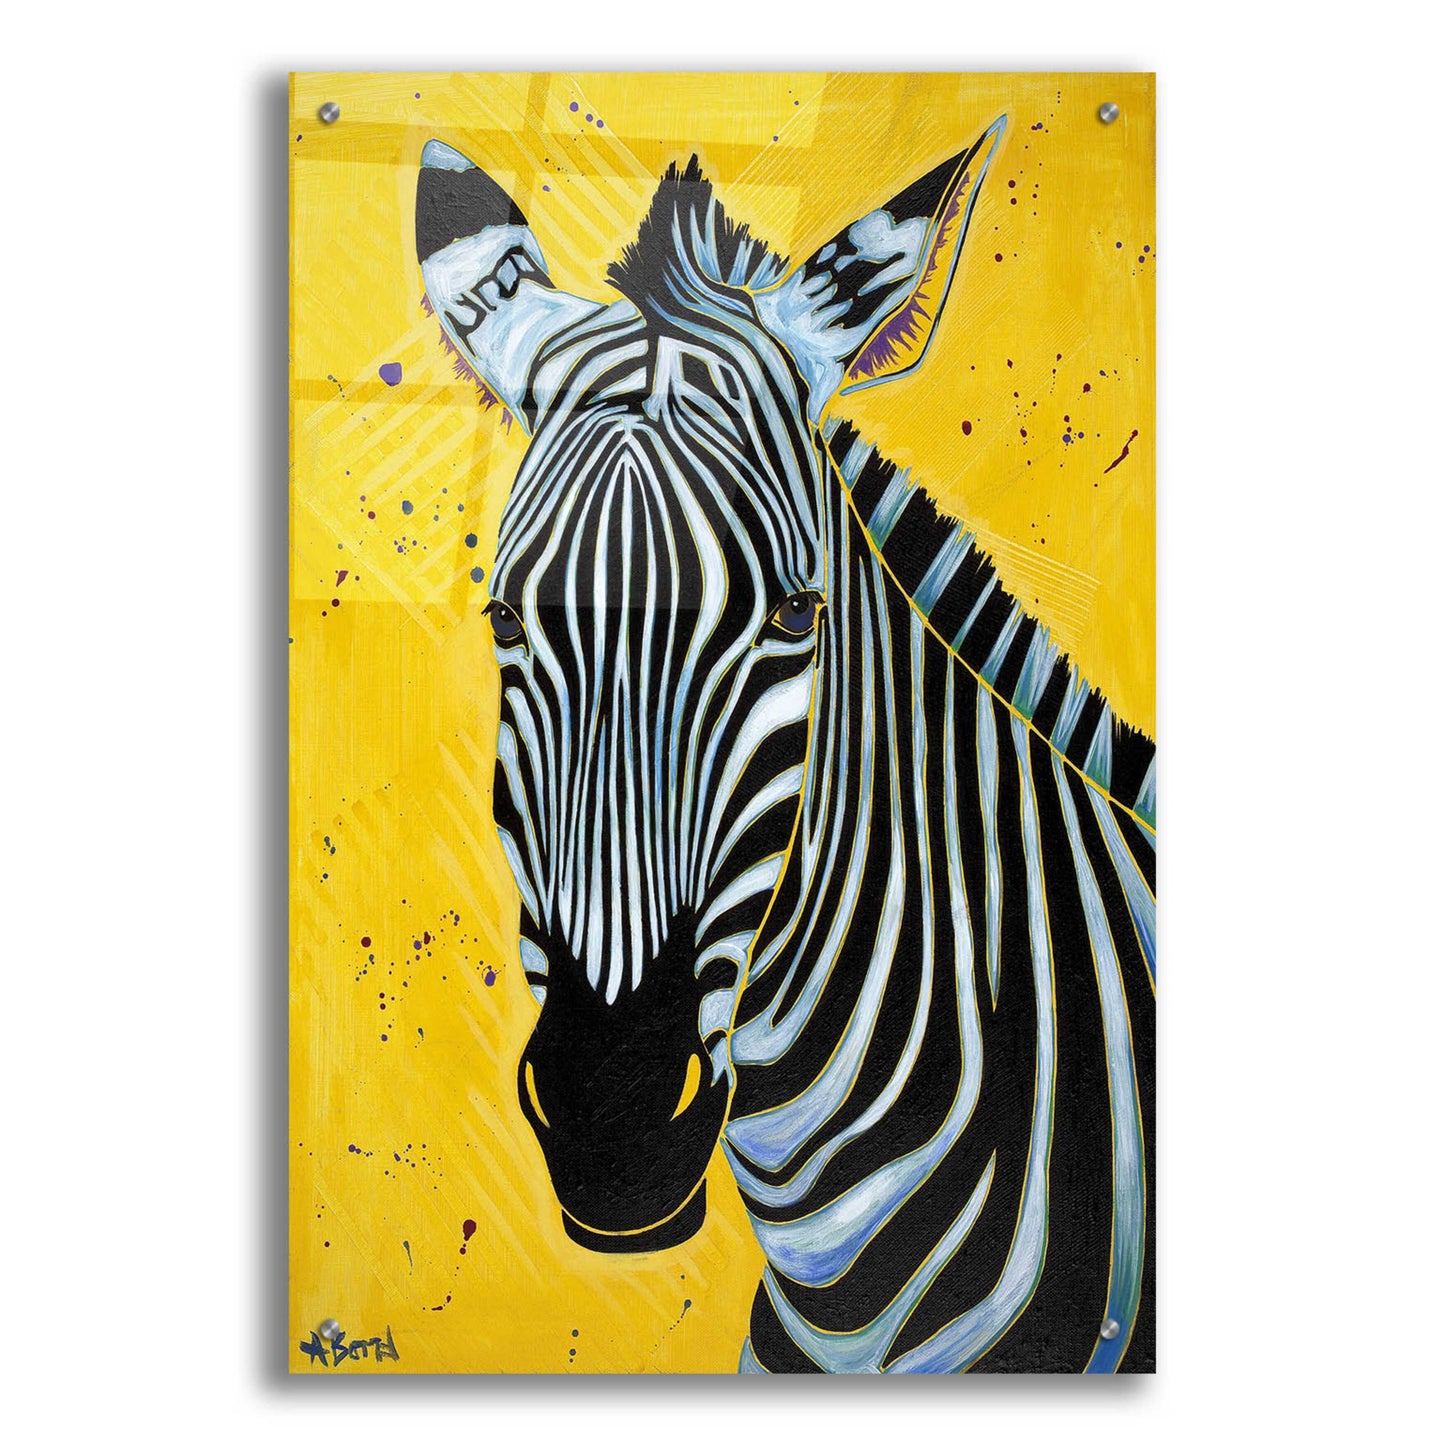 Epic Art 'Zebra' by Angela Bond Acrylic Glass Wall Art,24x36